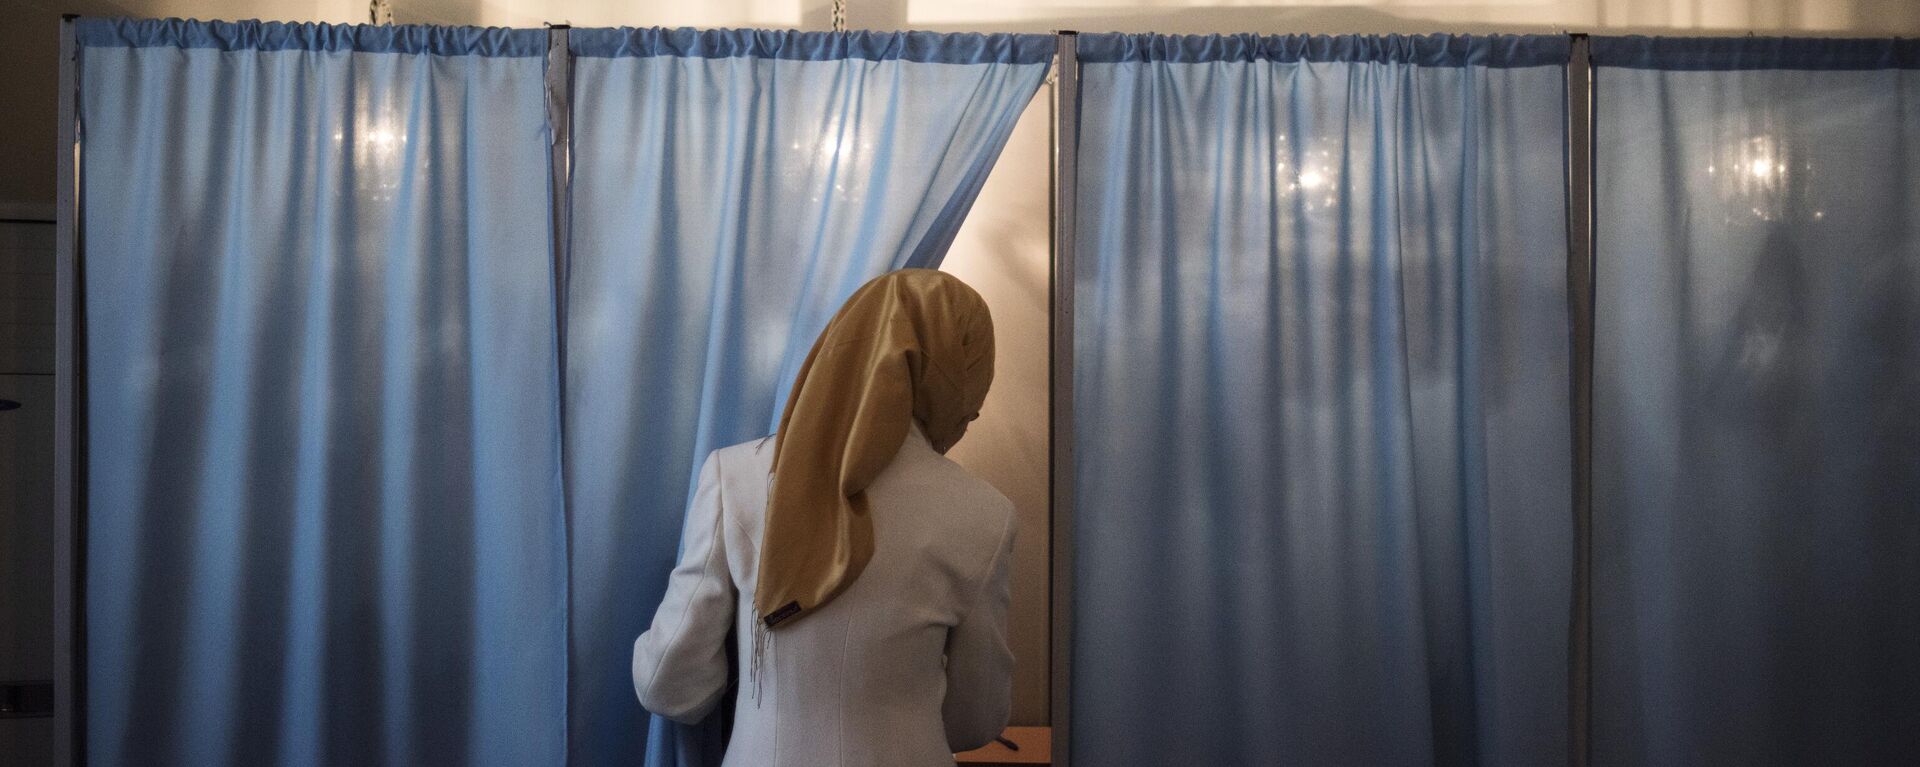 Женщина голосует на избирательном участке в Узбекистане, фото из архива - Sputnik Азербайджан, 1920, 23.10.2021